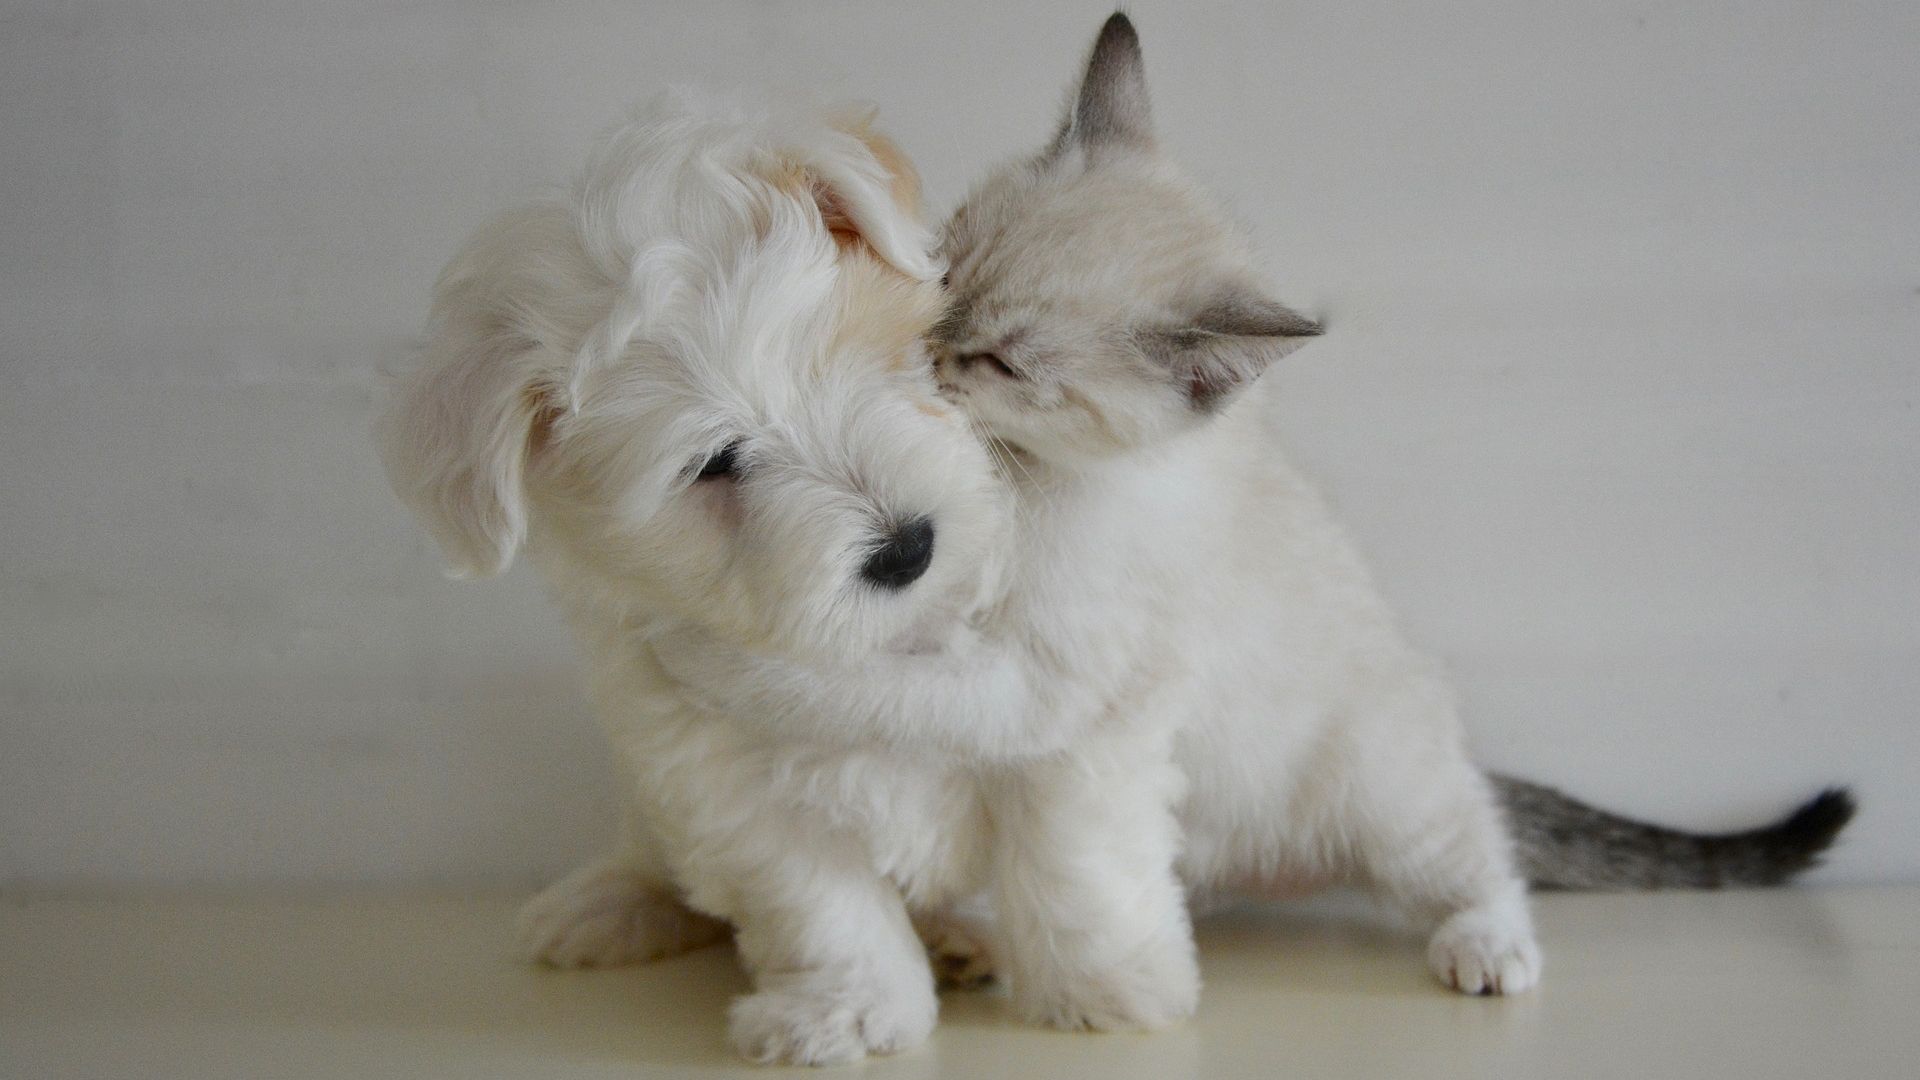 Puppy And Kitten full screen hd wallpaper